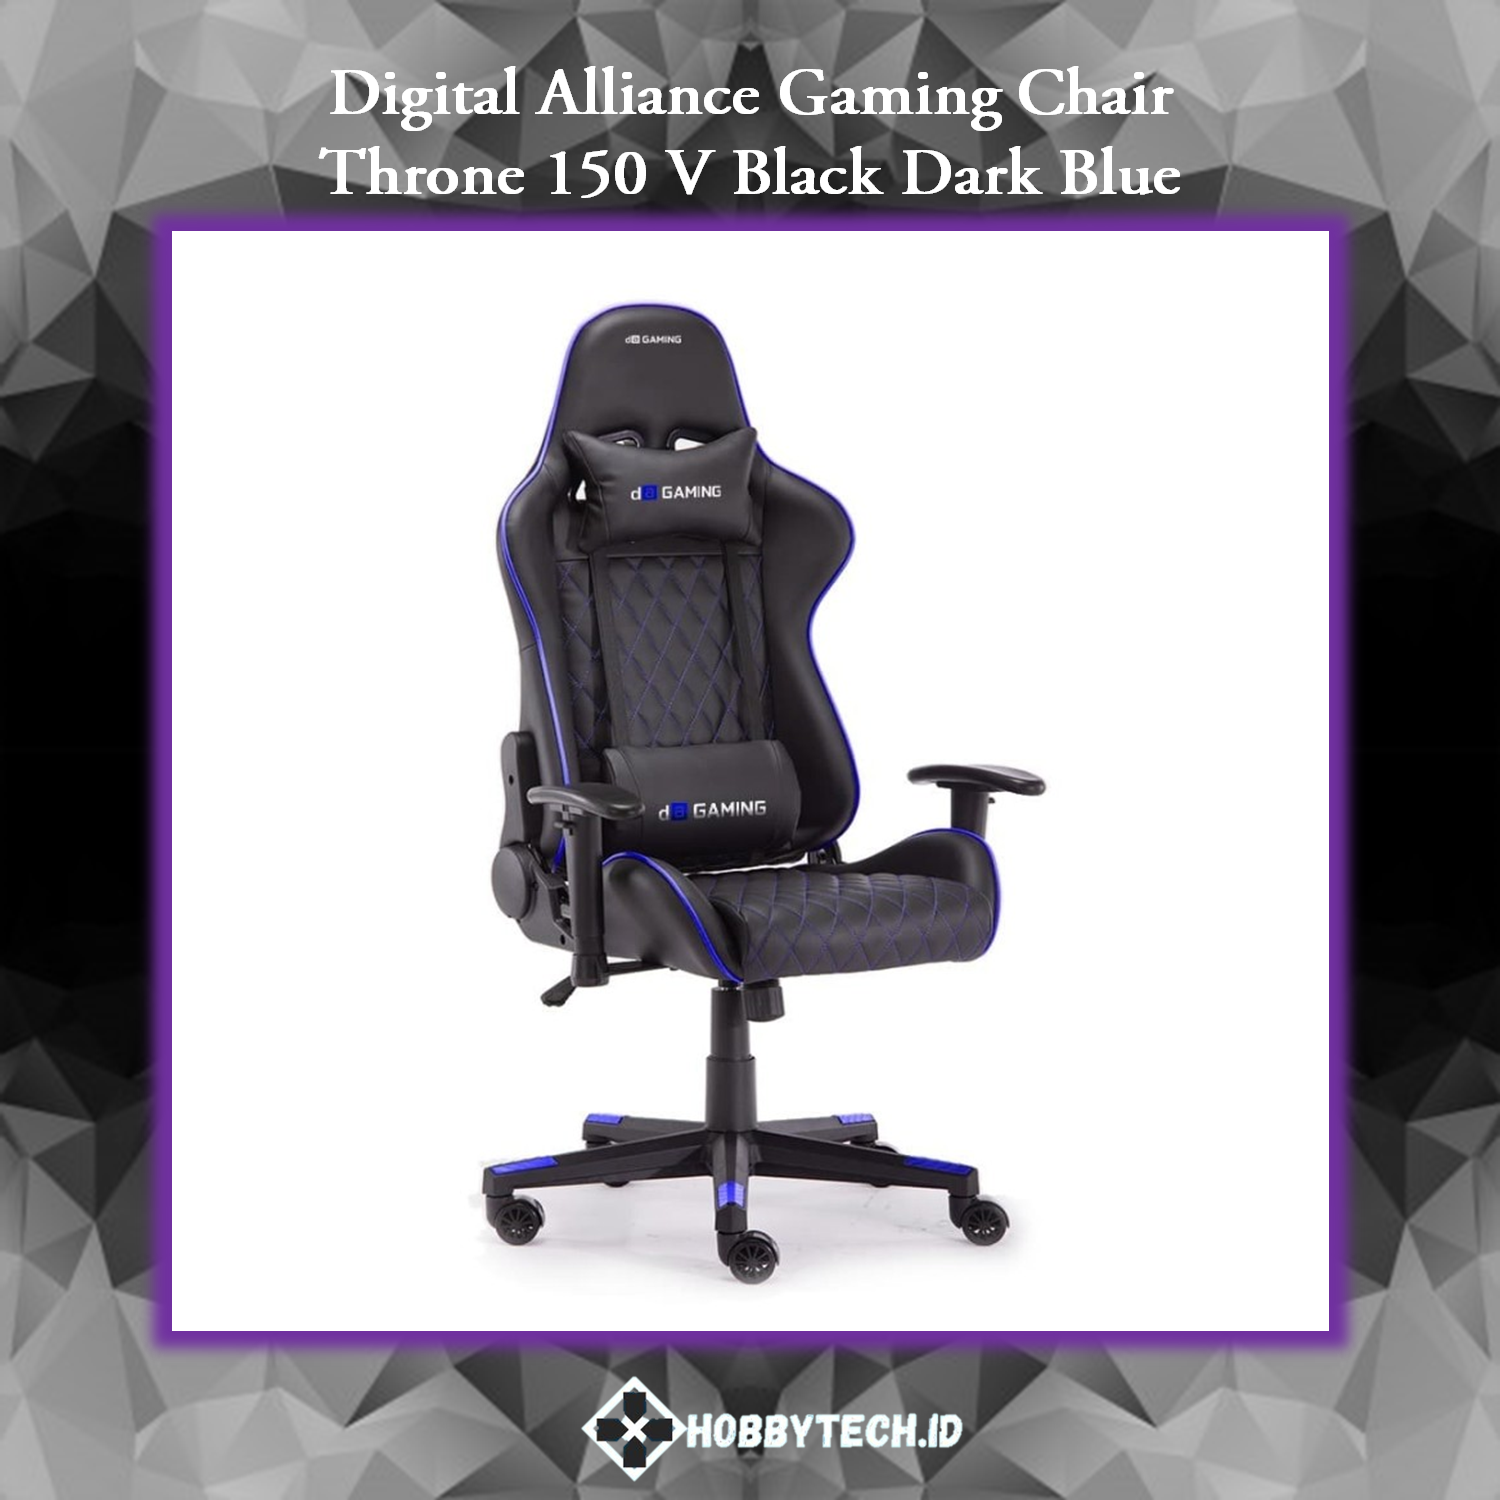 Digital Alliance Gaming Chair Throne 150 V Black Dark Blue